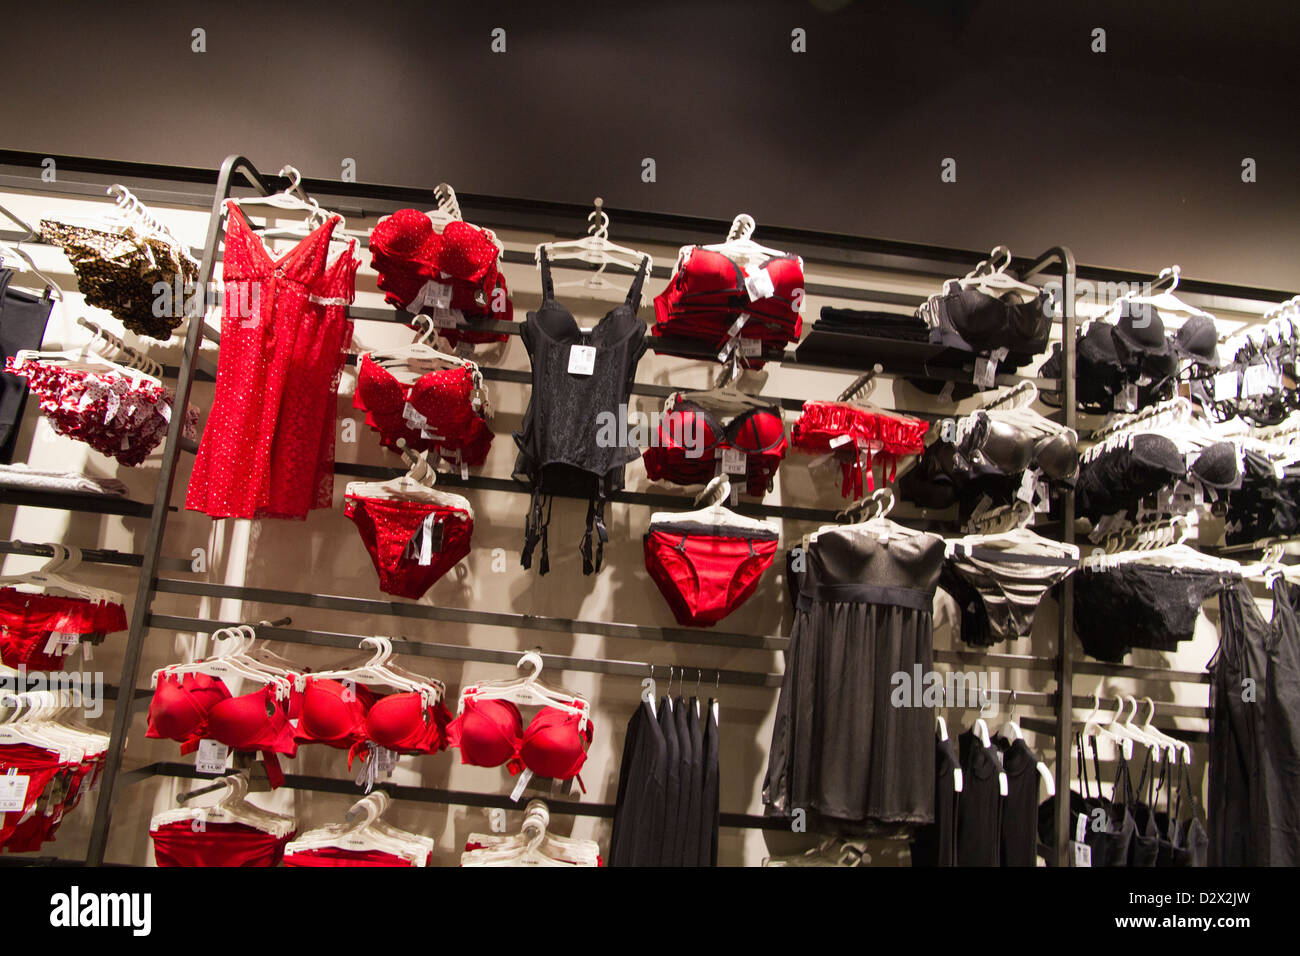 https://c8.alamy.com/comp/D2X2JW/tezenis-underwear-store-woman-red-lingerie-D2X2JW.jpg